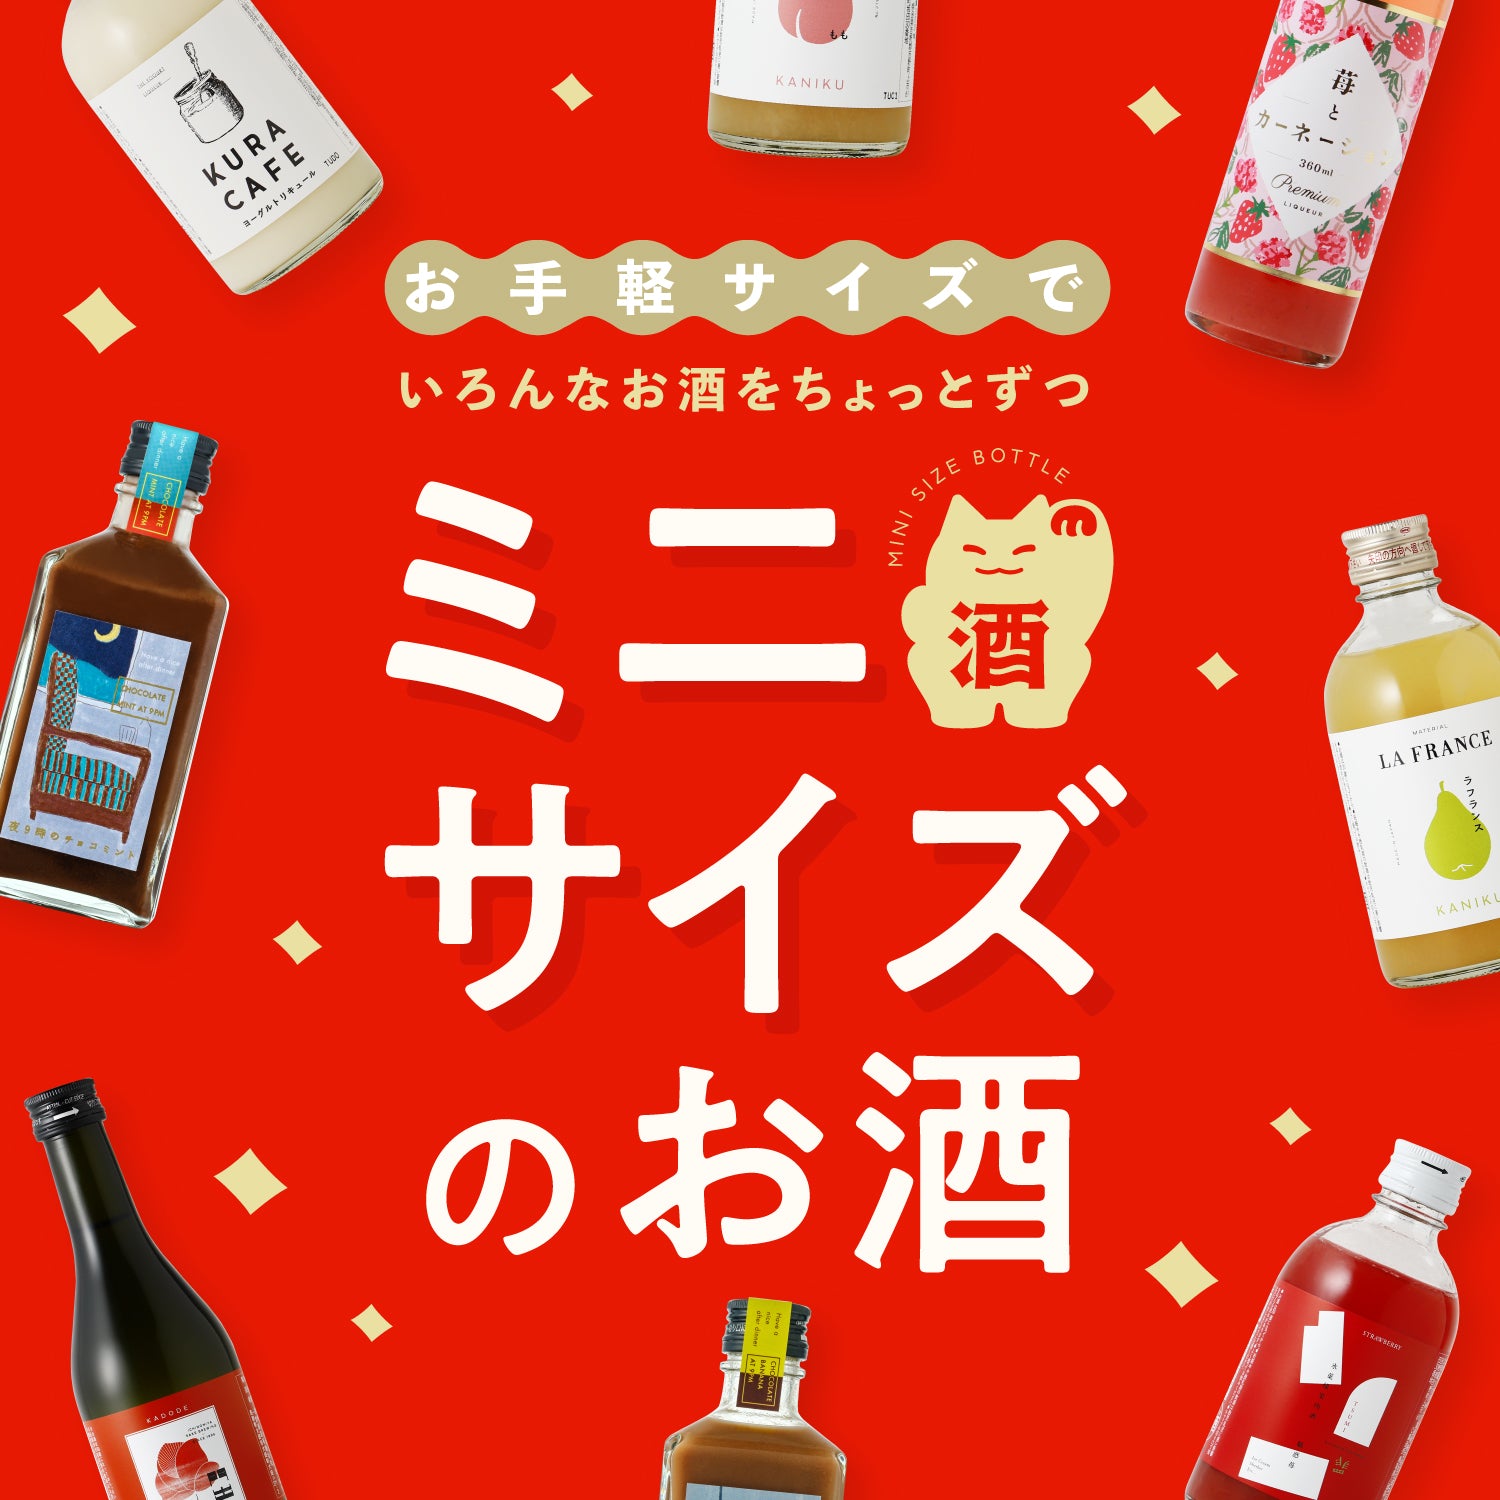 【ギフトボックス付き】ミニ6連酒ガチャ -果実酒・梅酒・リキュール-